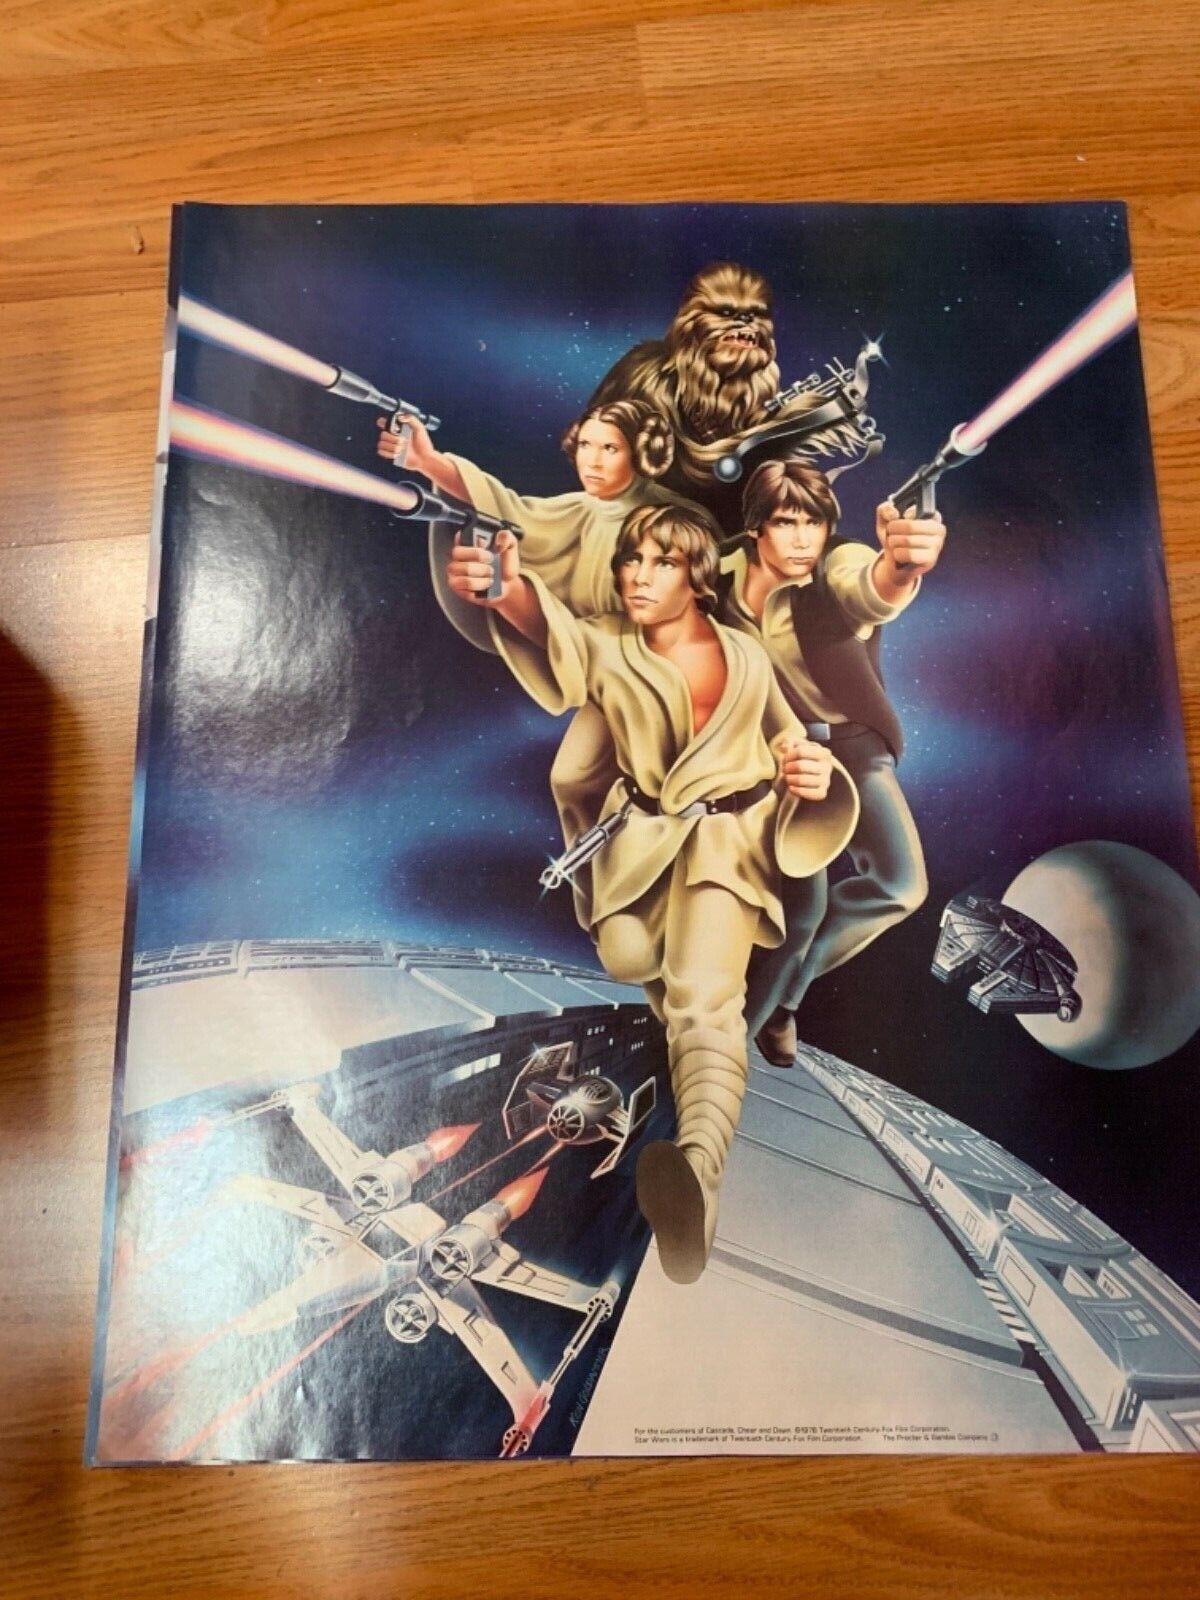 Star Wars Original Proctor & Gamble Poster 1978 Set of 3 Original Posters